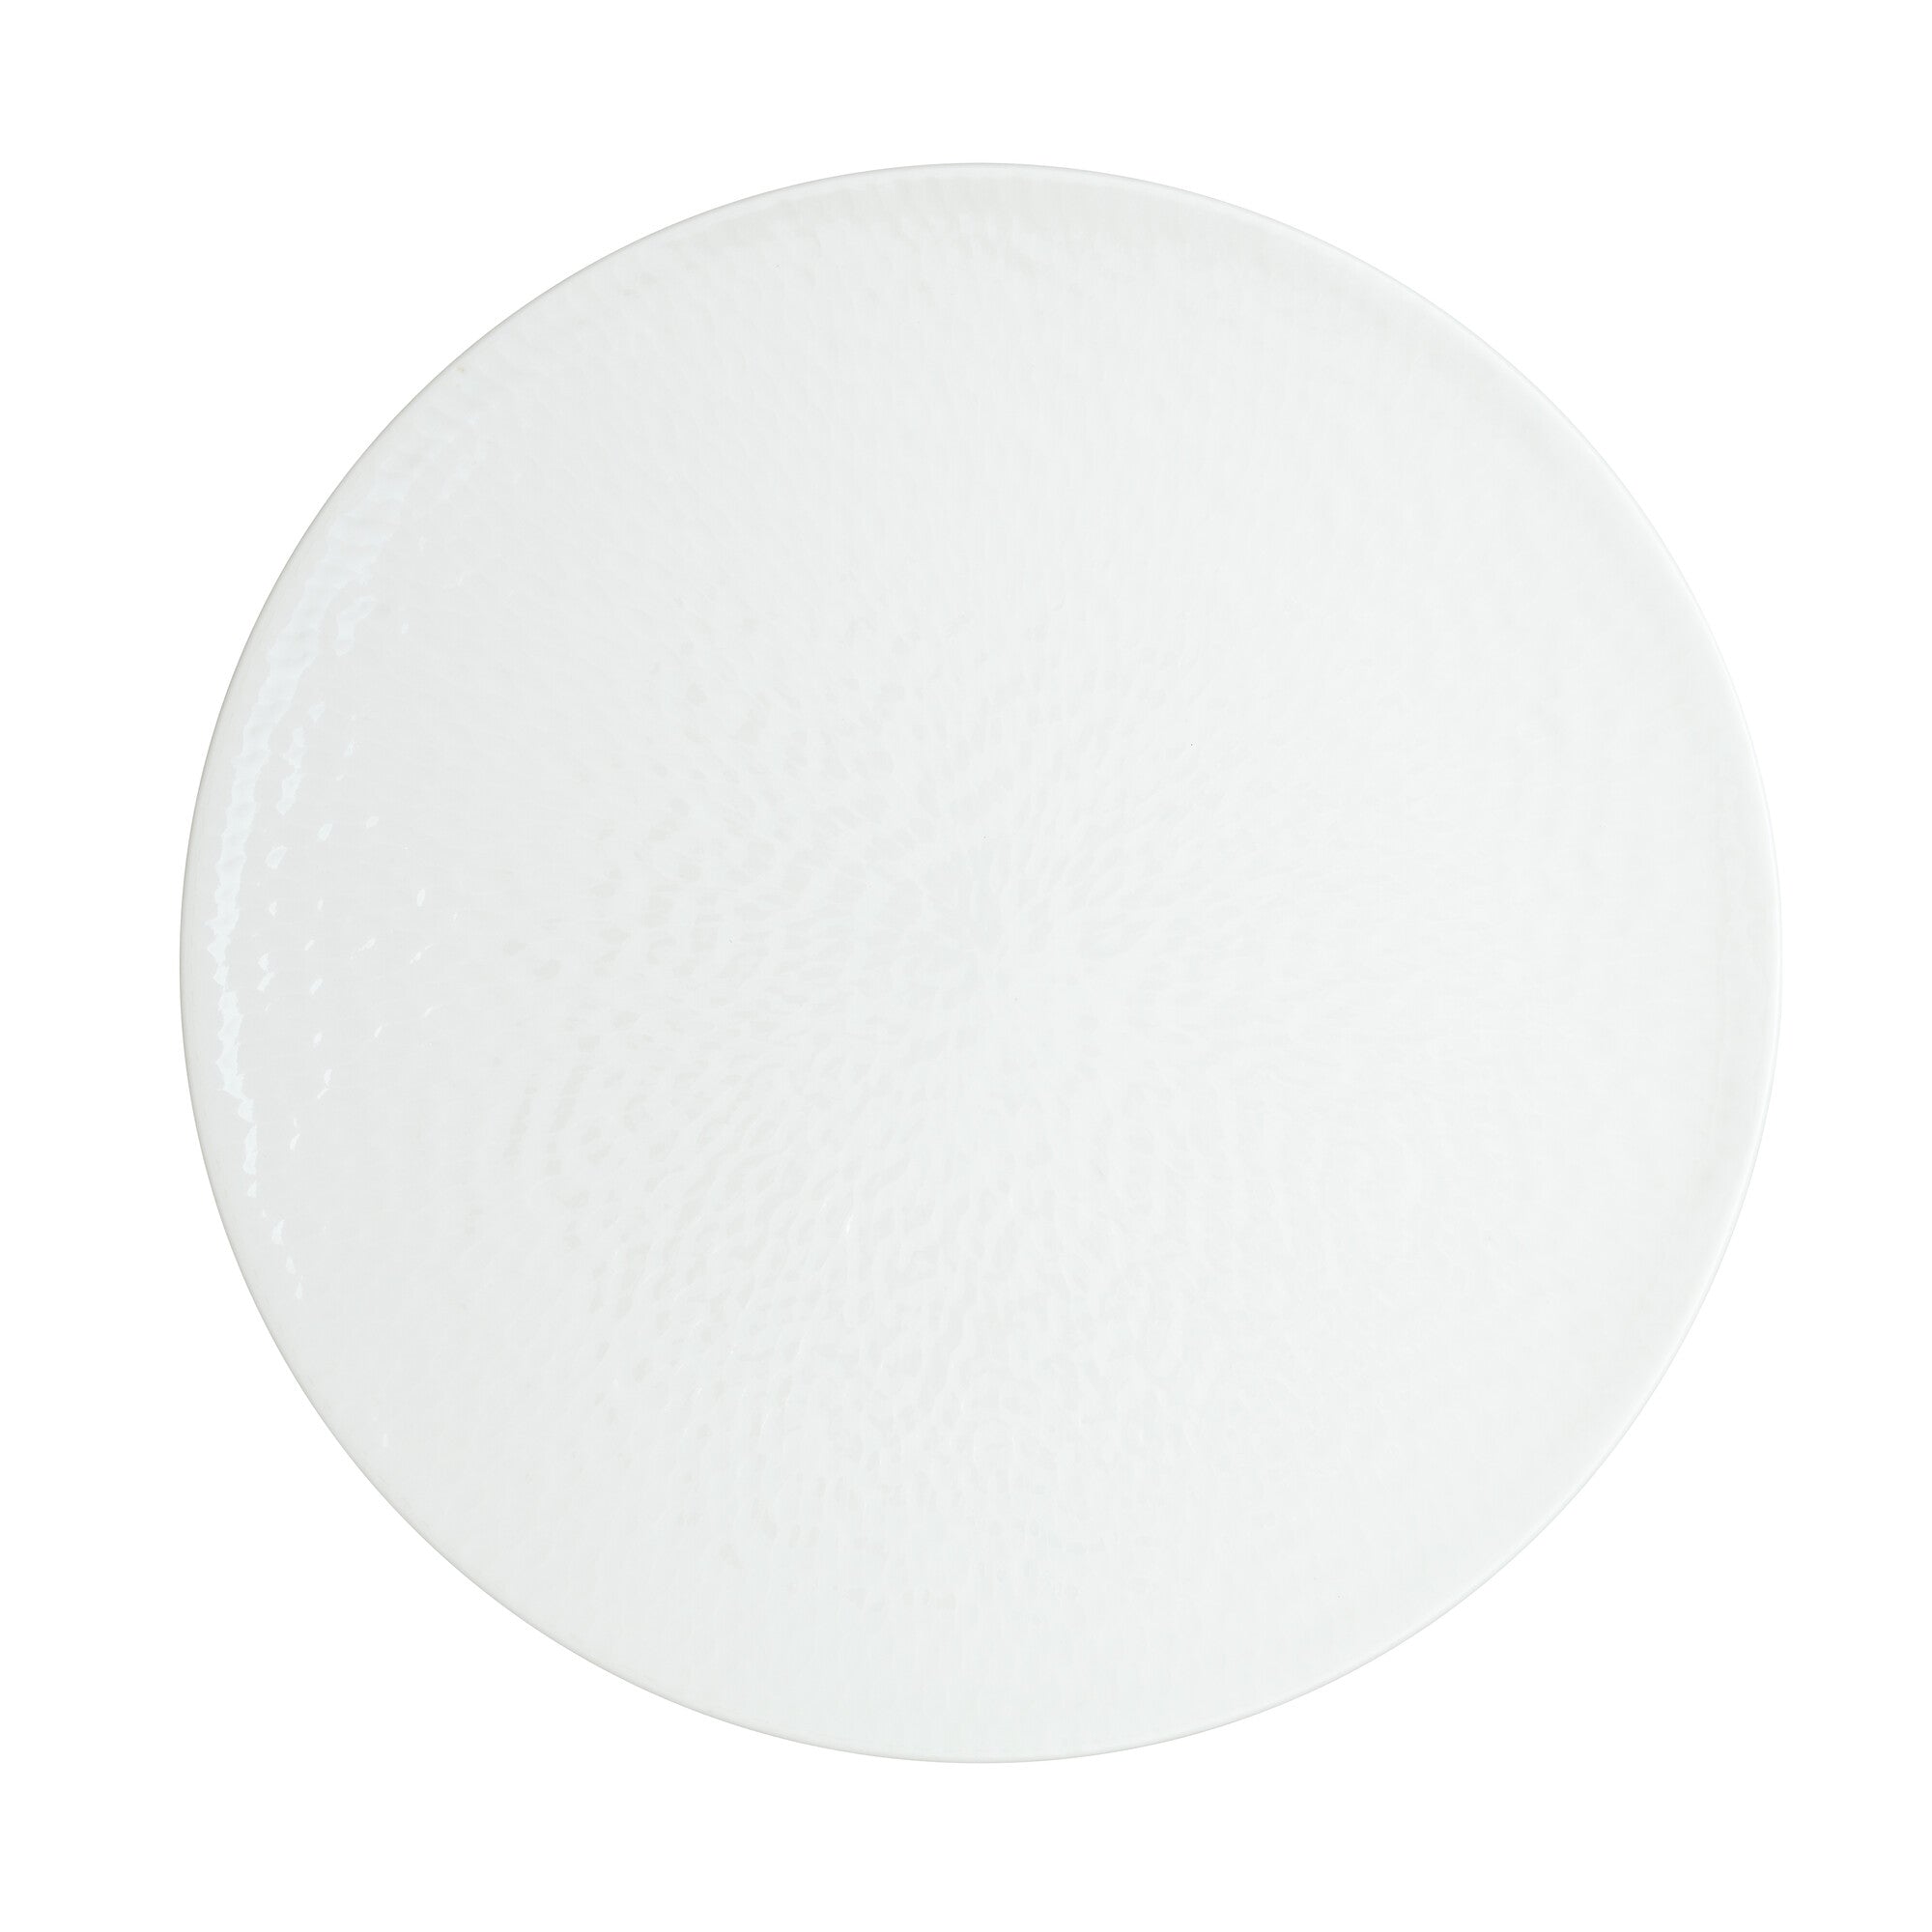 Denby Carve White Porcelain Dinner Plate